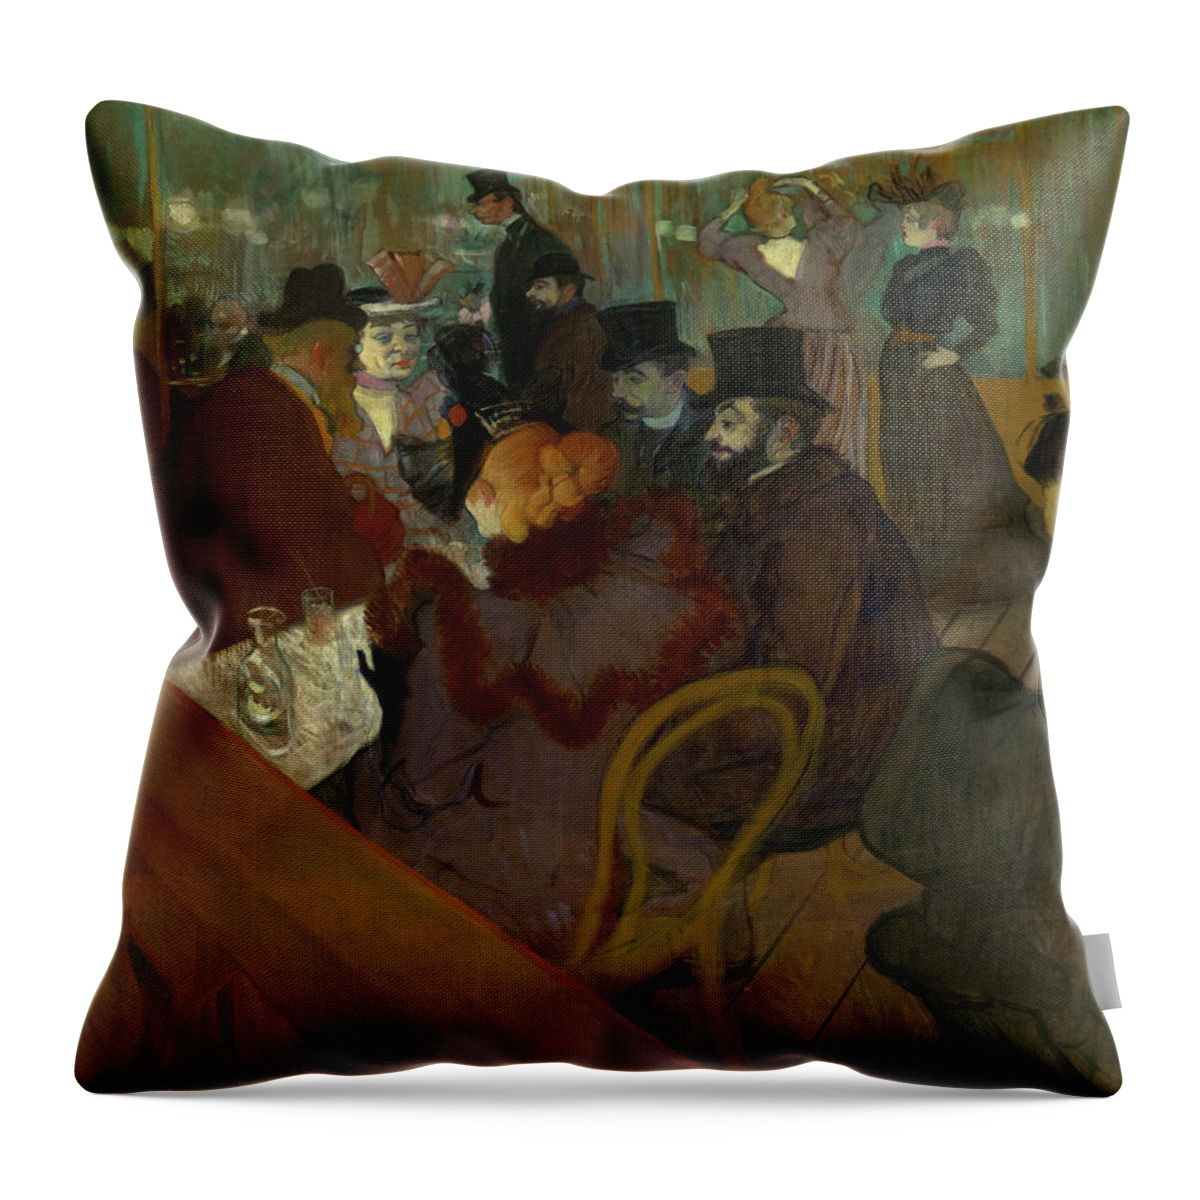 Henri De Toulouse-lautrec Throw Pillow featuring the painting At the Moulin Rouge, 1895 by Henri de Toulouse-Lautrec